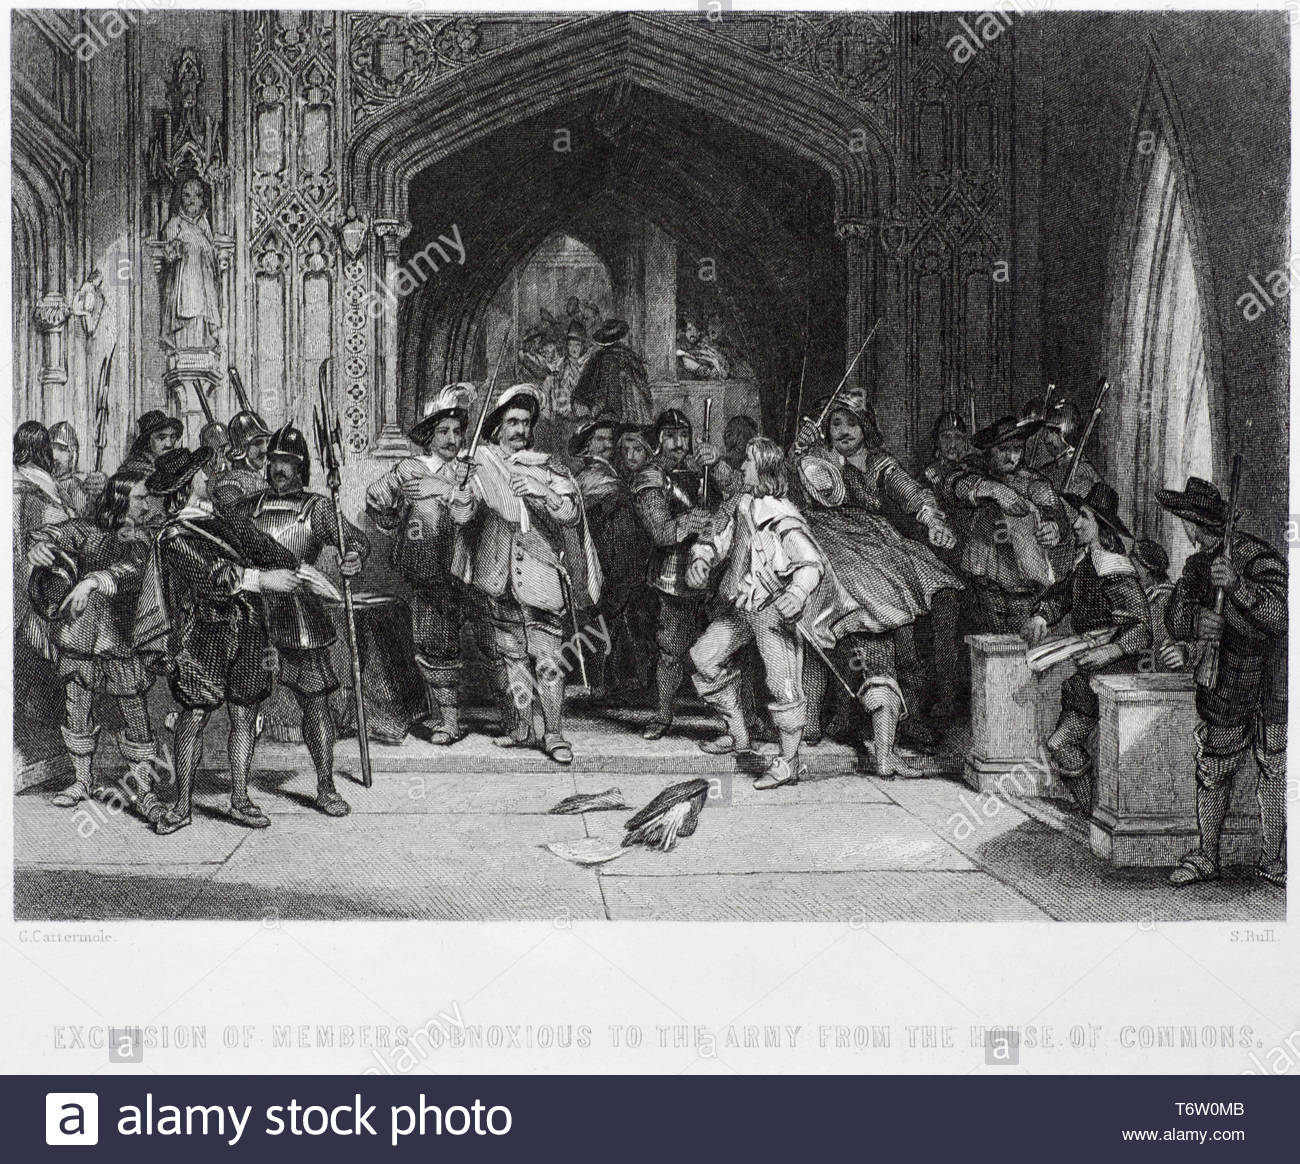 Pride’s Purge fand im dezember 1648 als Teil des Englischen Bürgerkriegs statt, als Colonel Thomas Pride und seine Truppen der New Model Army Mitglieder aus dem House of Commons ausschlossen, die nicht die Granden der New Model Army unterstützten Stockfoto